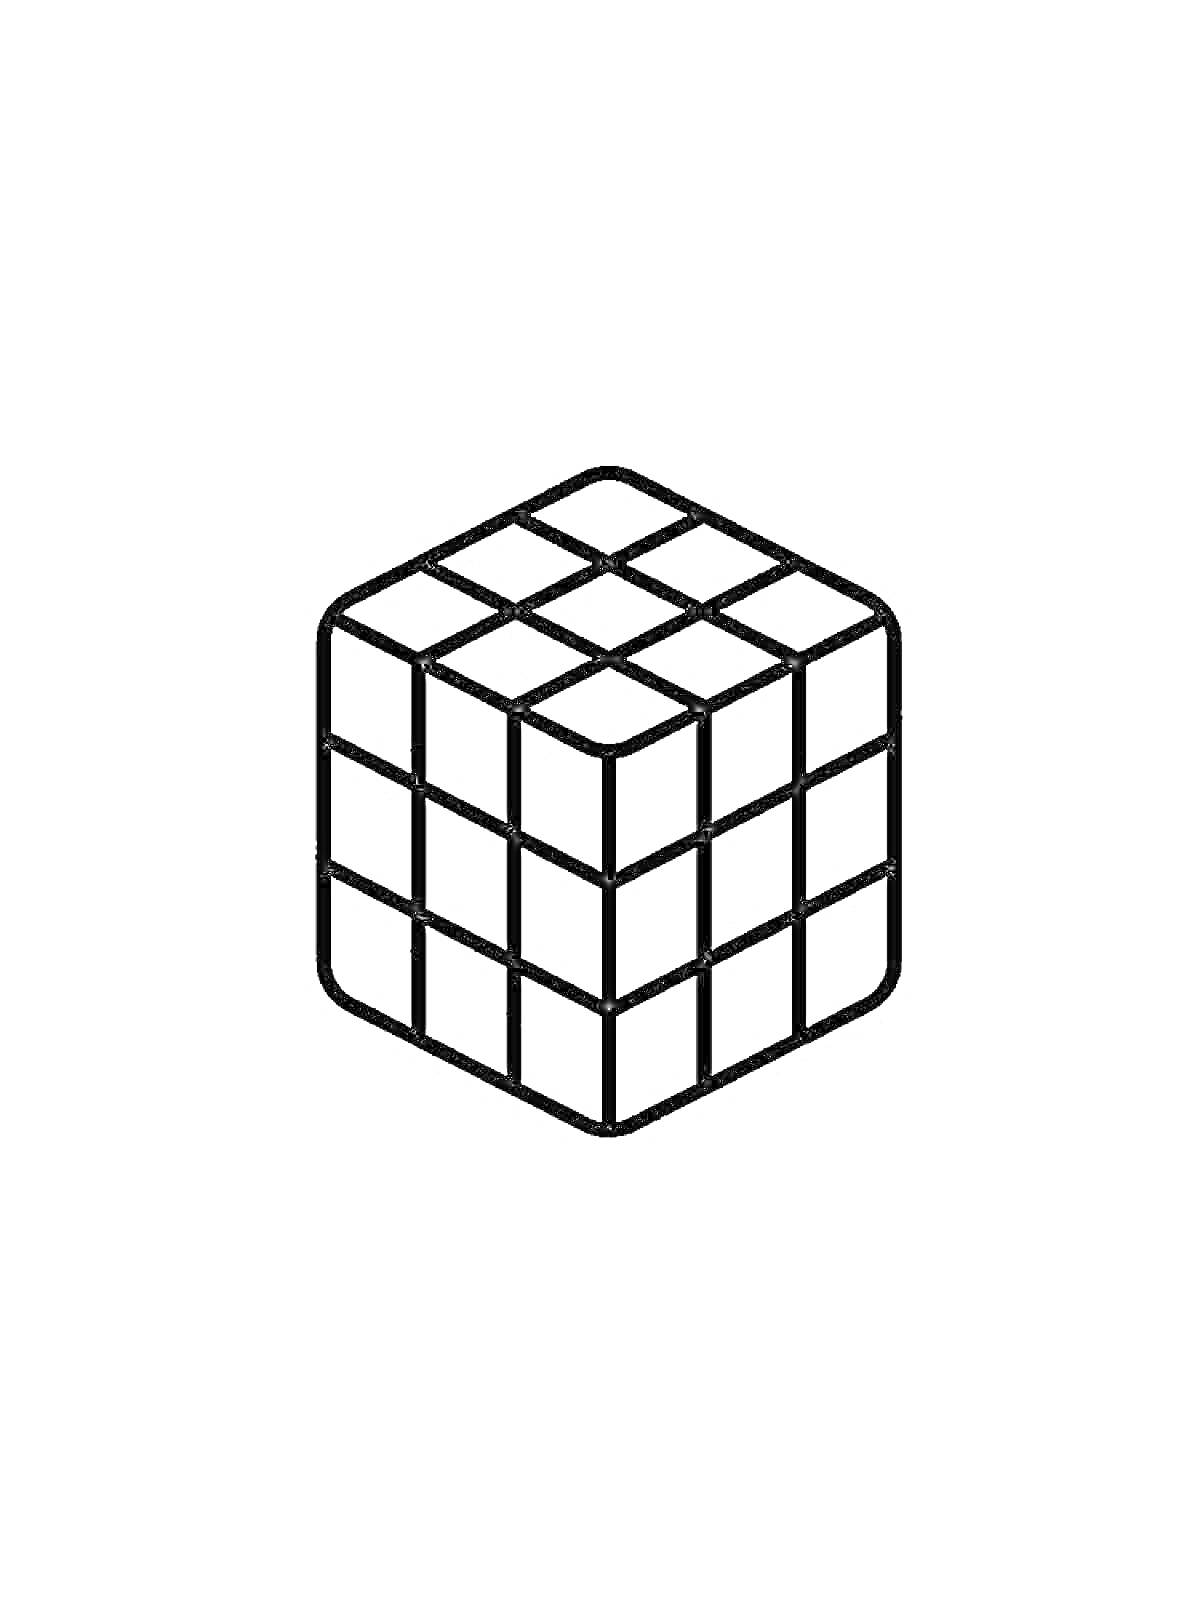 Раскраска Кубик Рубика с сеткой из 27 маленьких кубиков